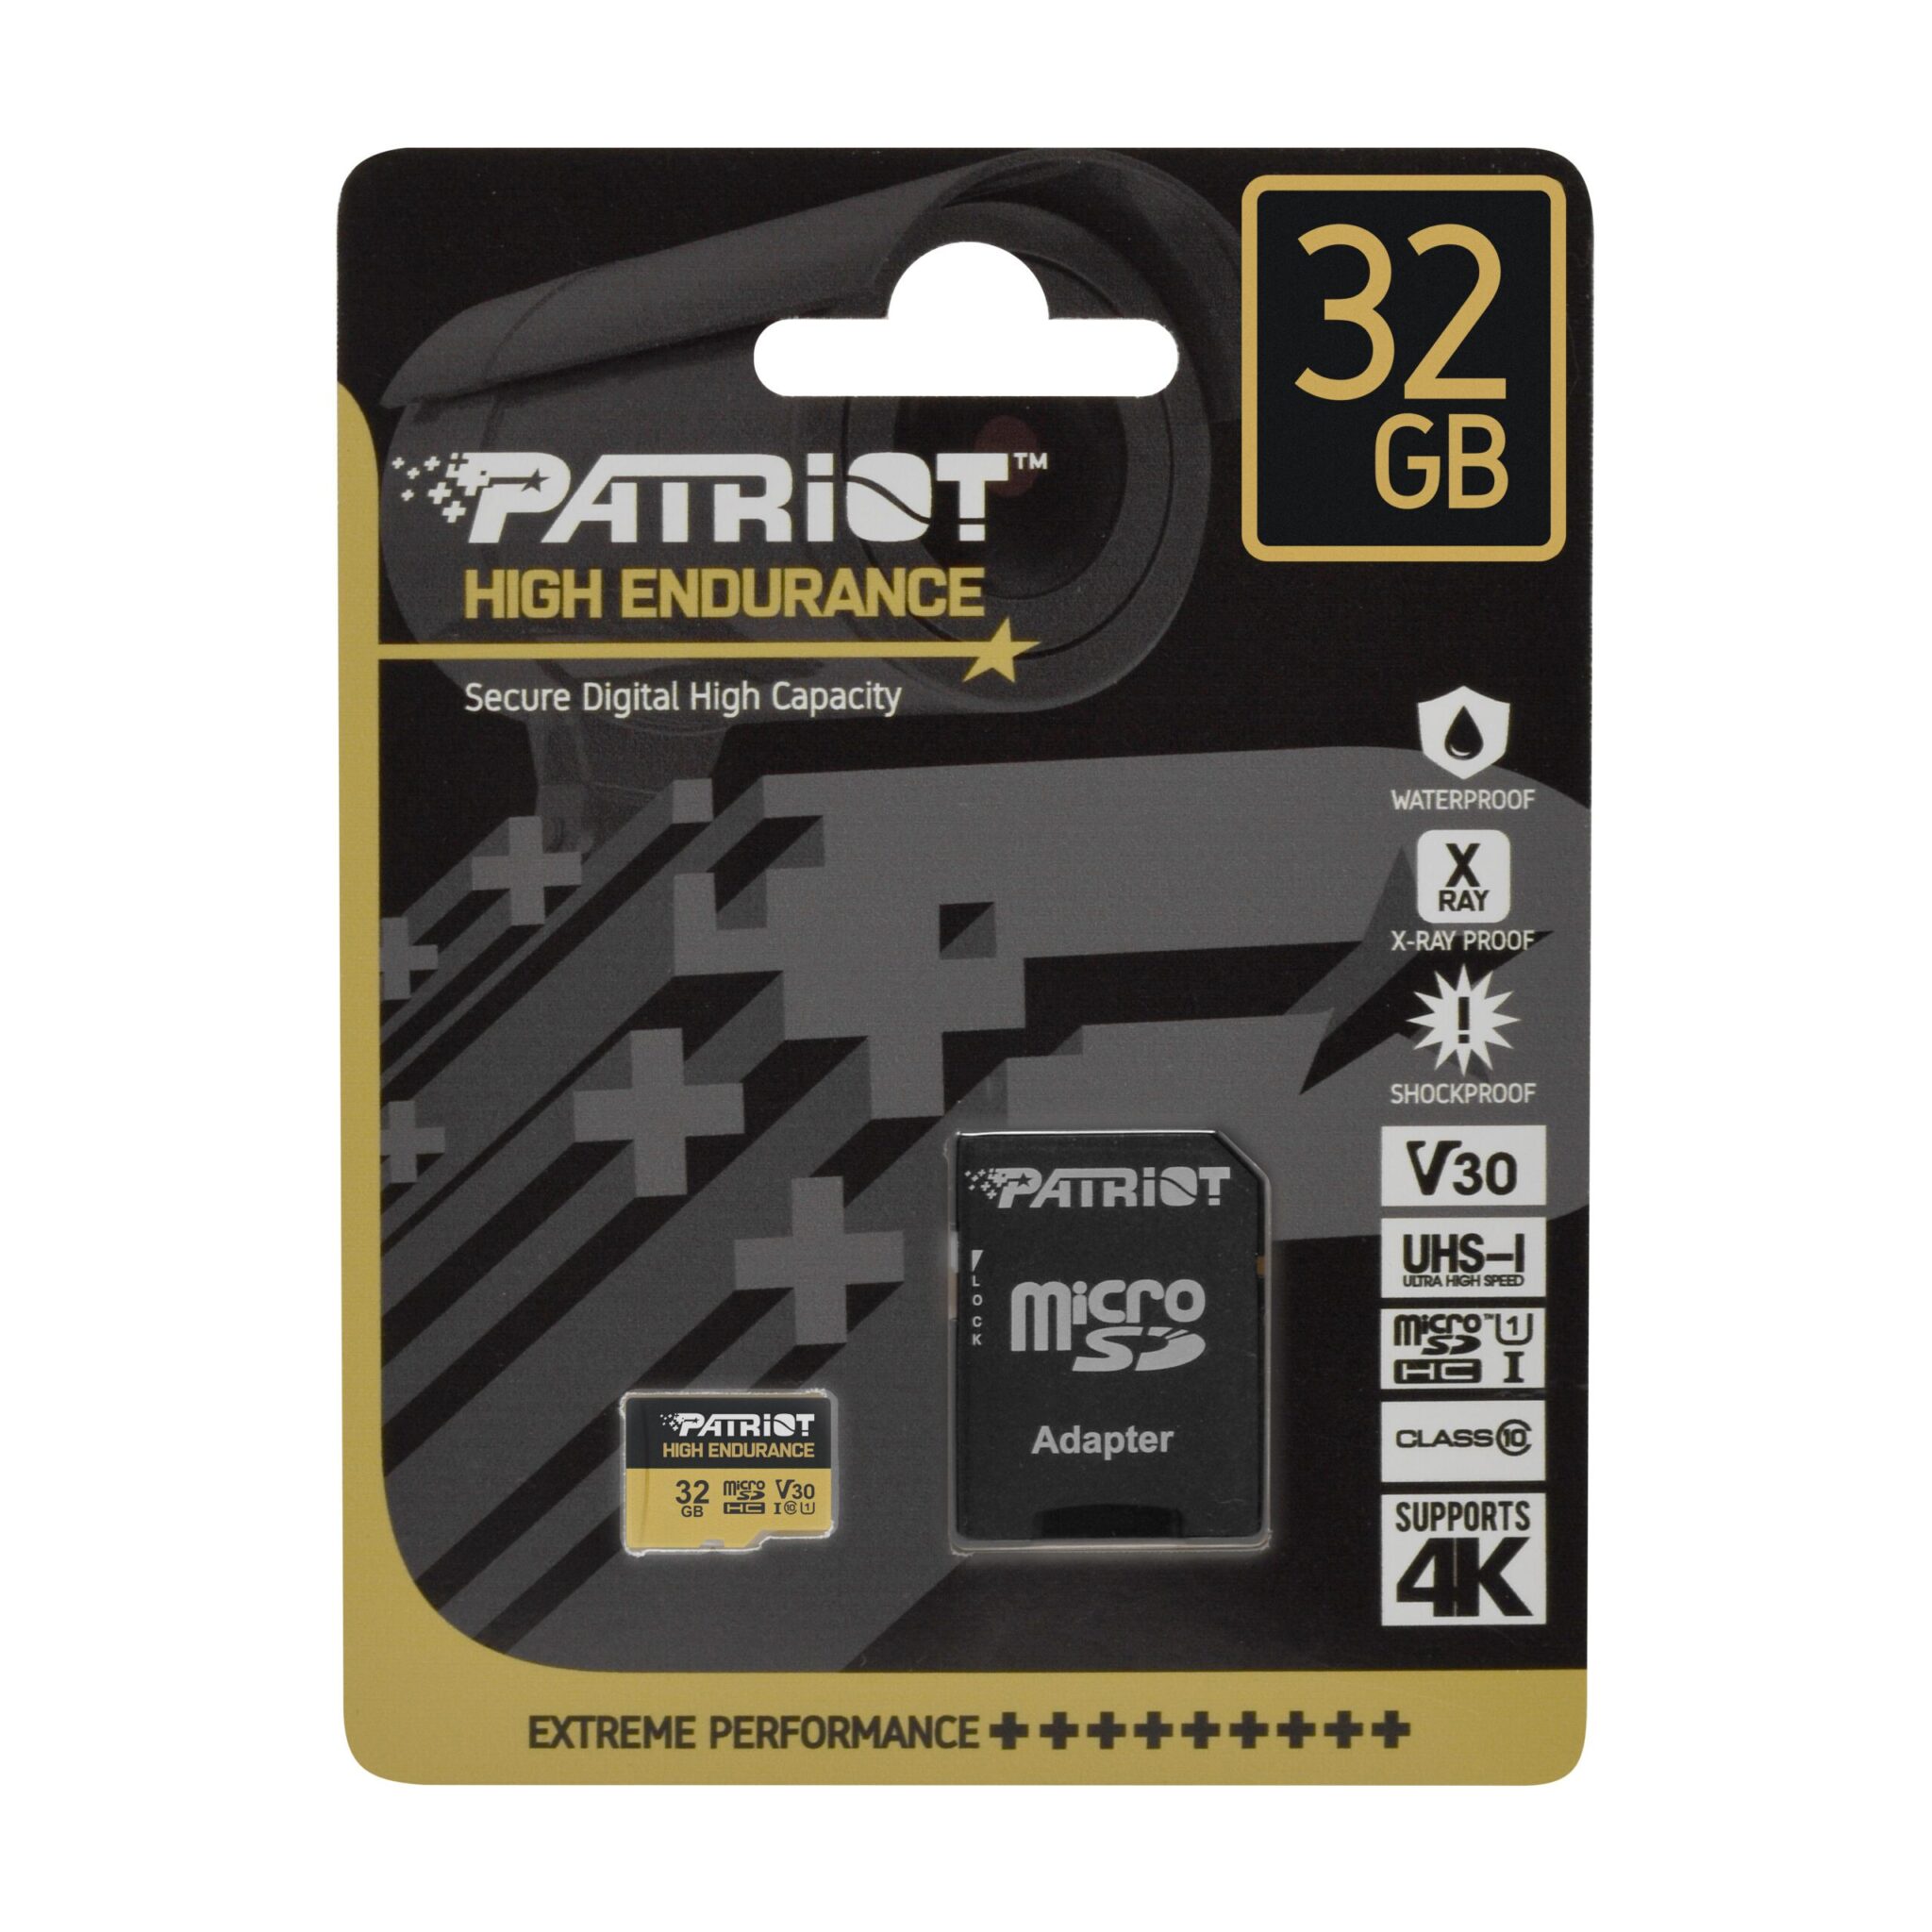 High Endurance microSD F 32GB scaled scaled